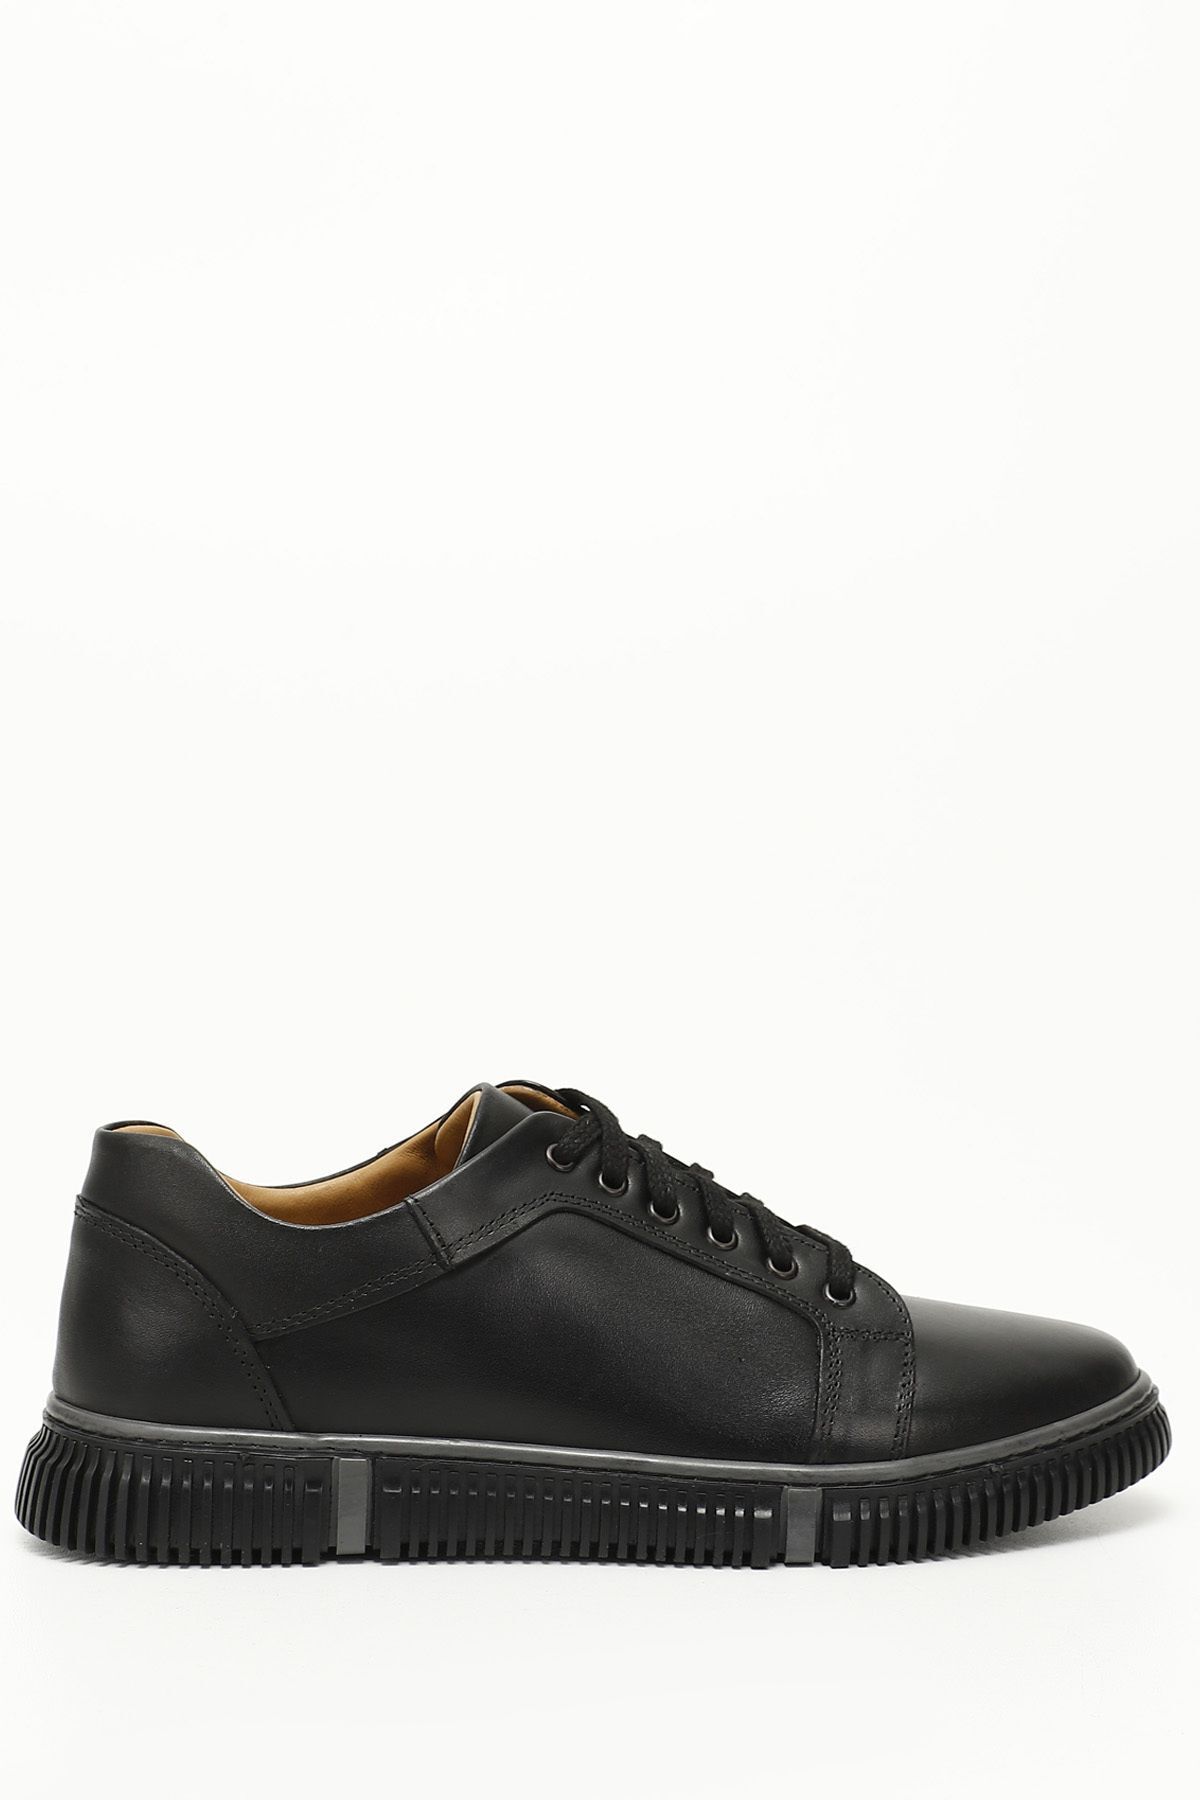 GÖNDERİ(R) Siyah Gön Hakiki Deri Yuvarlak Burun Bağcıklı Günlük Erkek Sneaker 01382